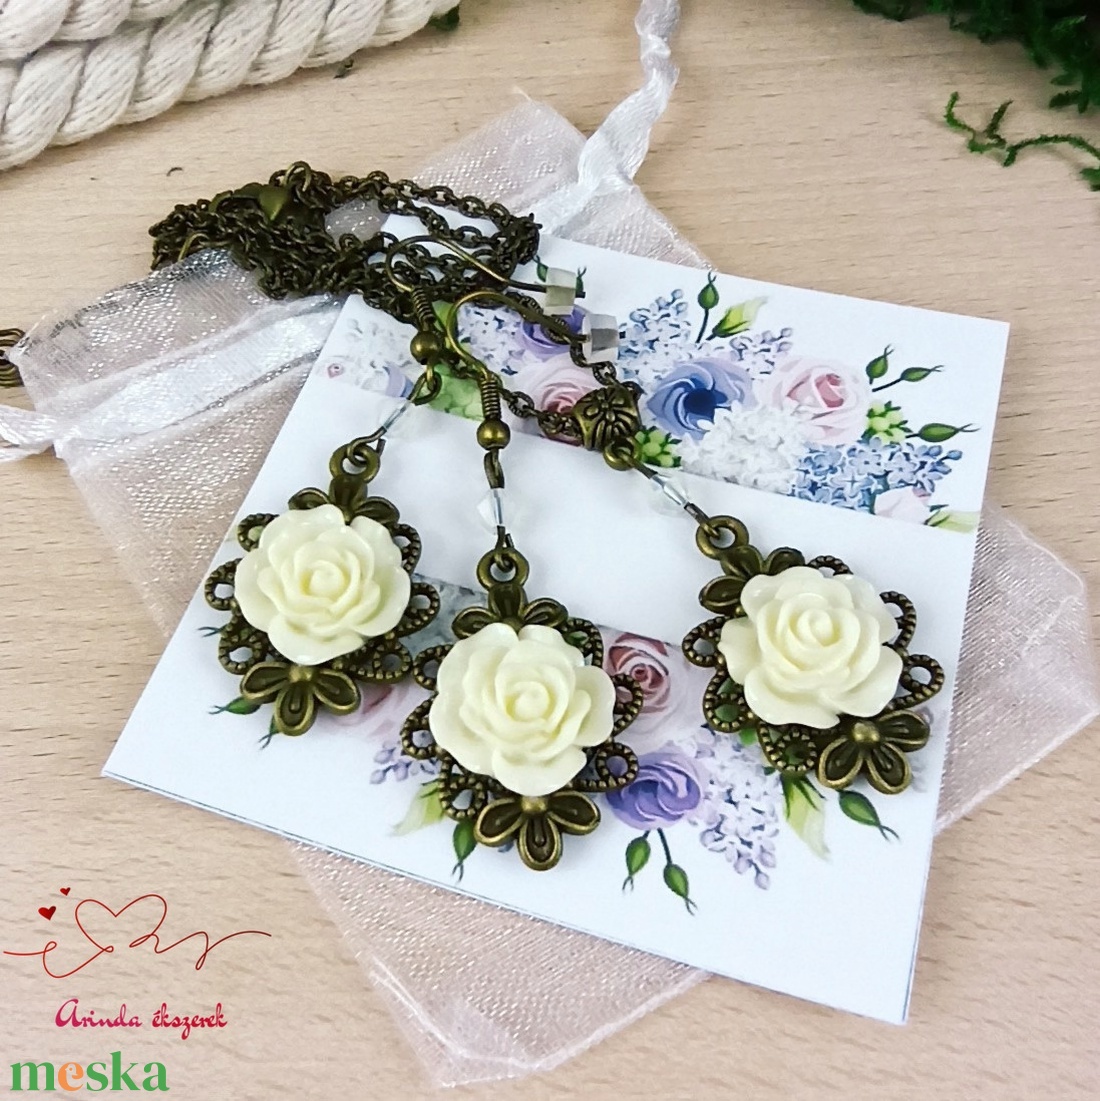 #48 fehér rózsás antik bronz szett nyaklánc fülbevaló esküvő alkalmi koszorúslány örömanya menyasszony násznagy - ékszer - ékszerszett - Meska.hu